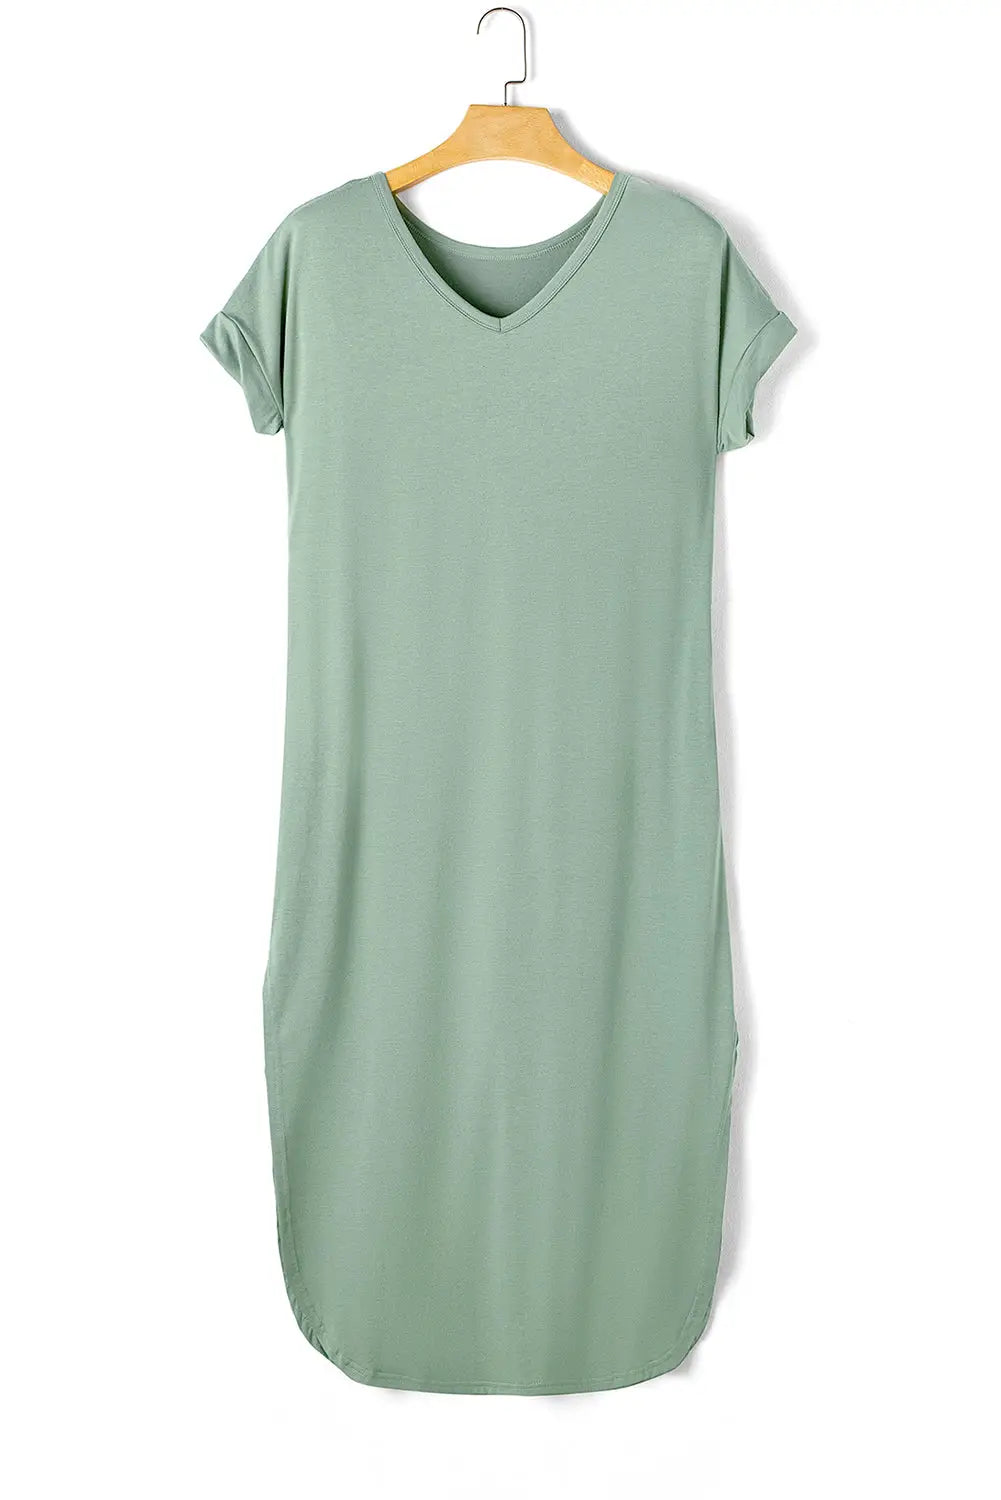 Grass green splits maxi t-shirt dress - t shirt dresses